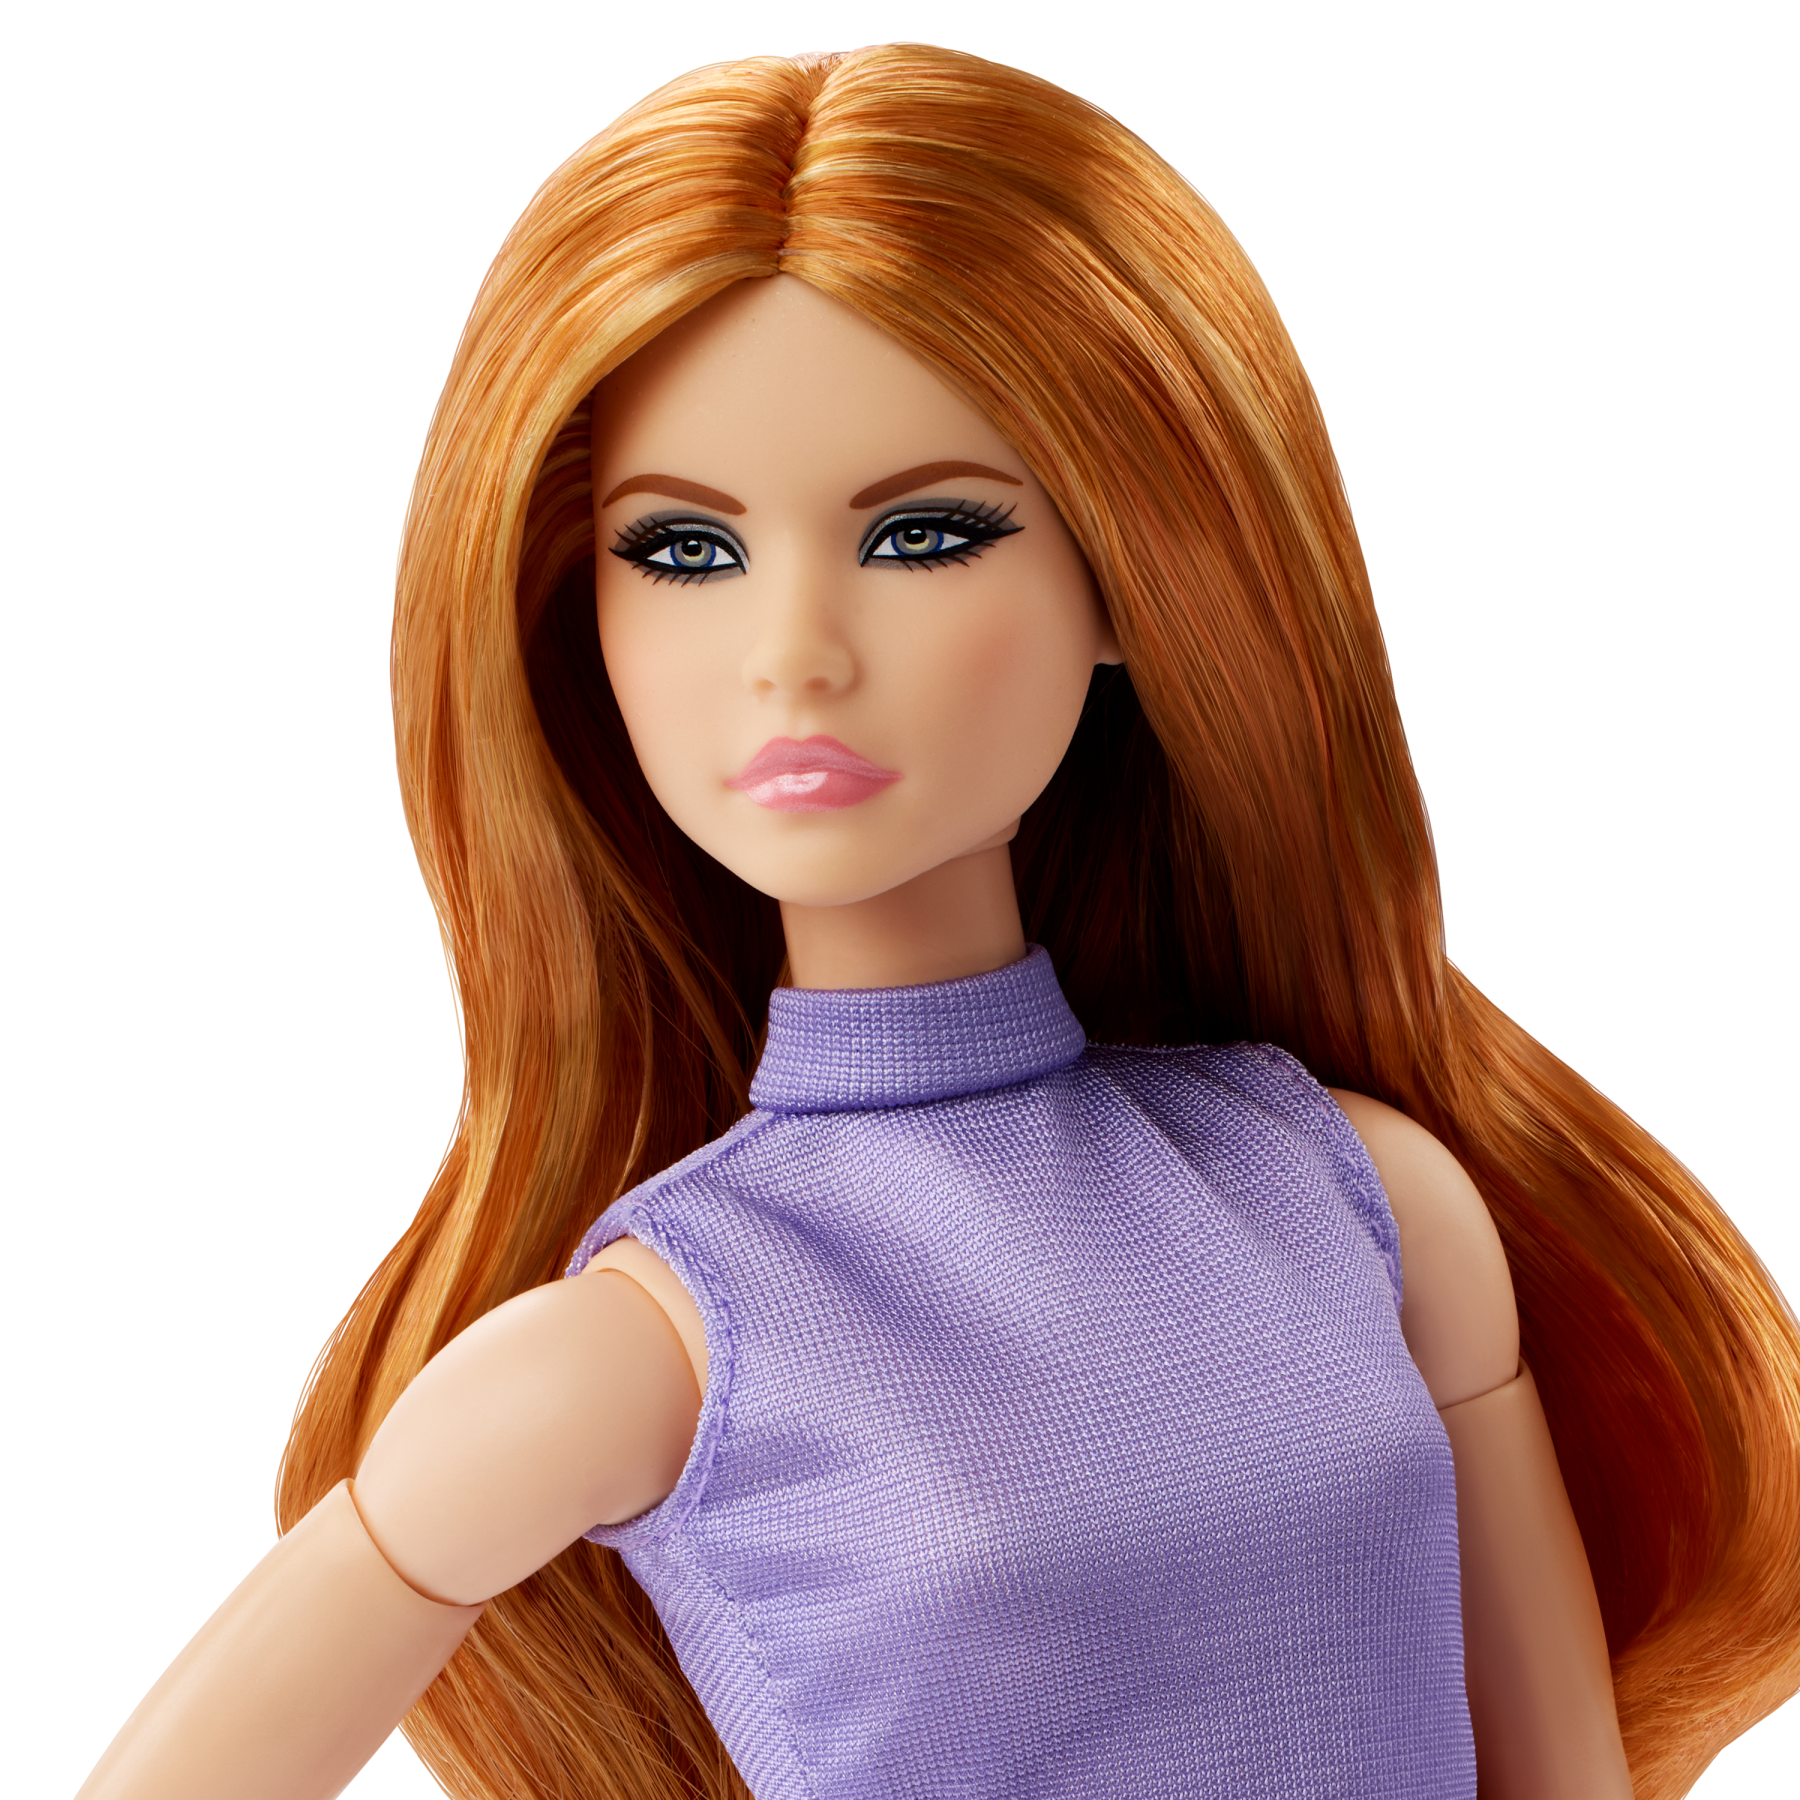 Barbie looks - bambola da collezione n. 20, barbie con capelli rossi e look moderno anni 2000, top lavanda, gonna in finta pelle e stivali al ginocchio - Barbie